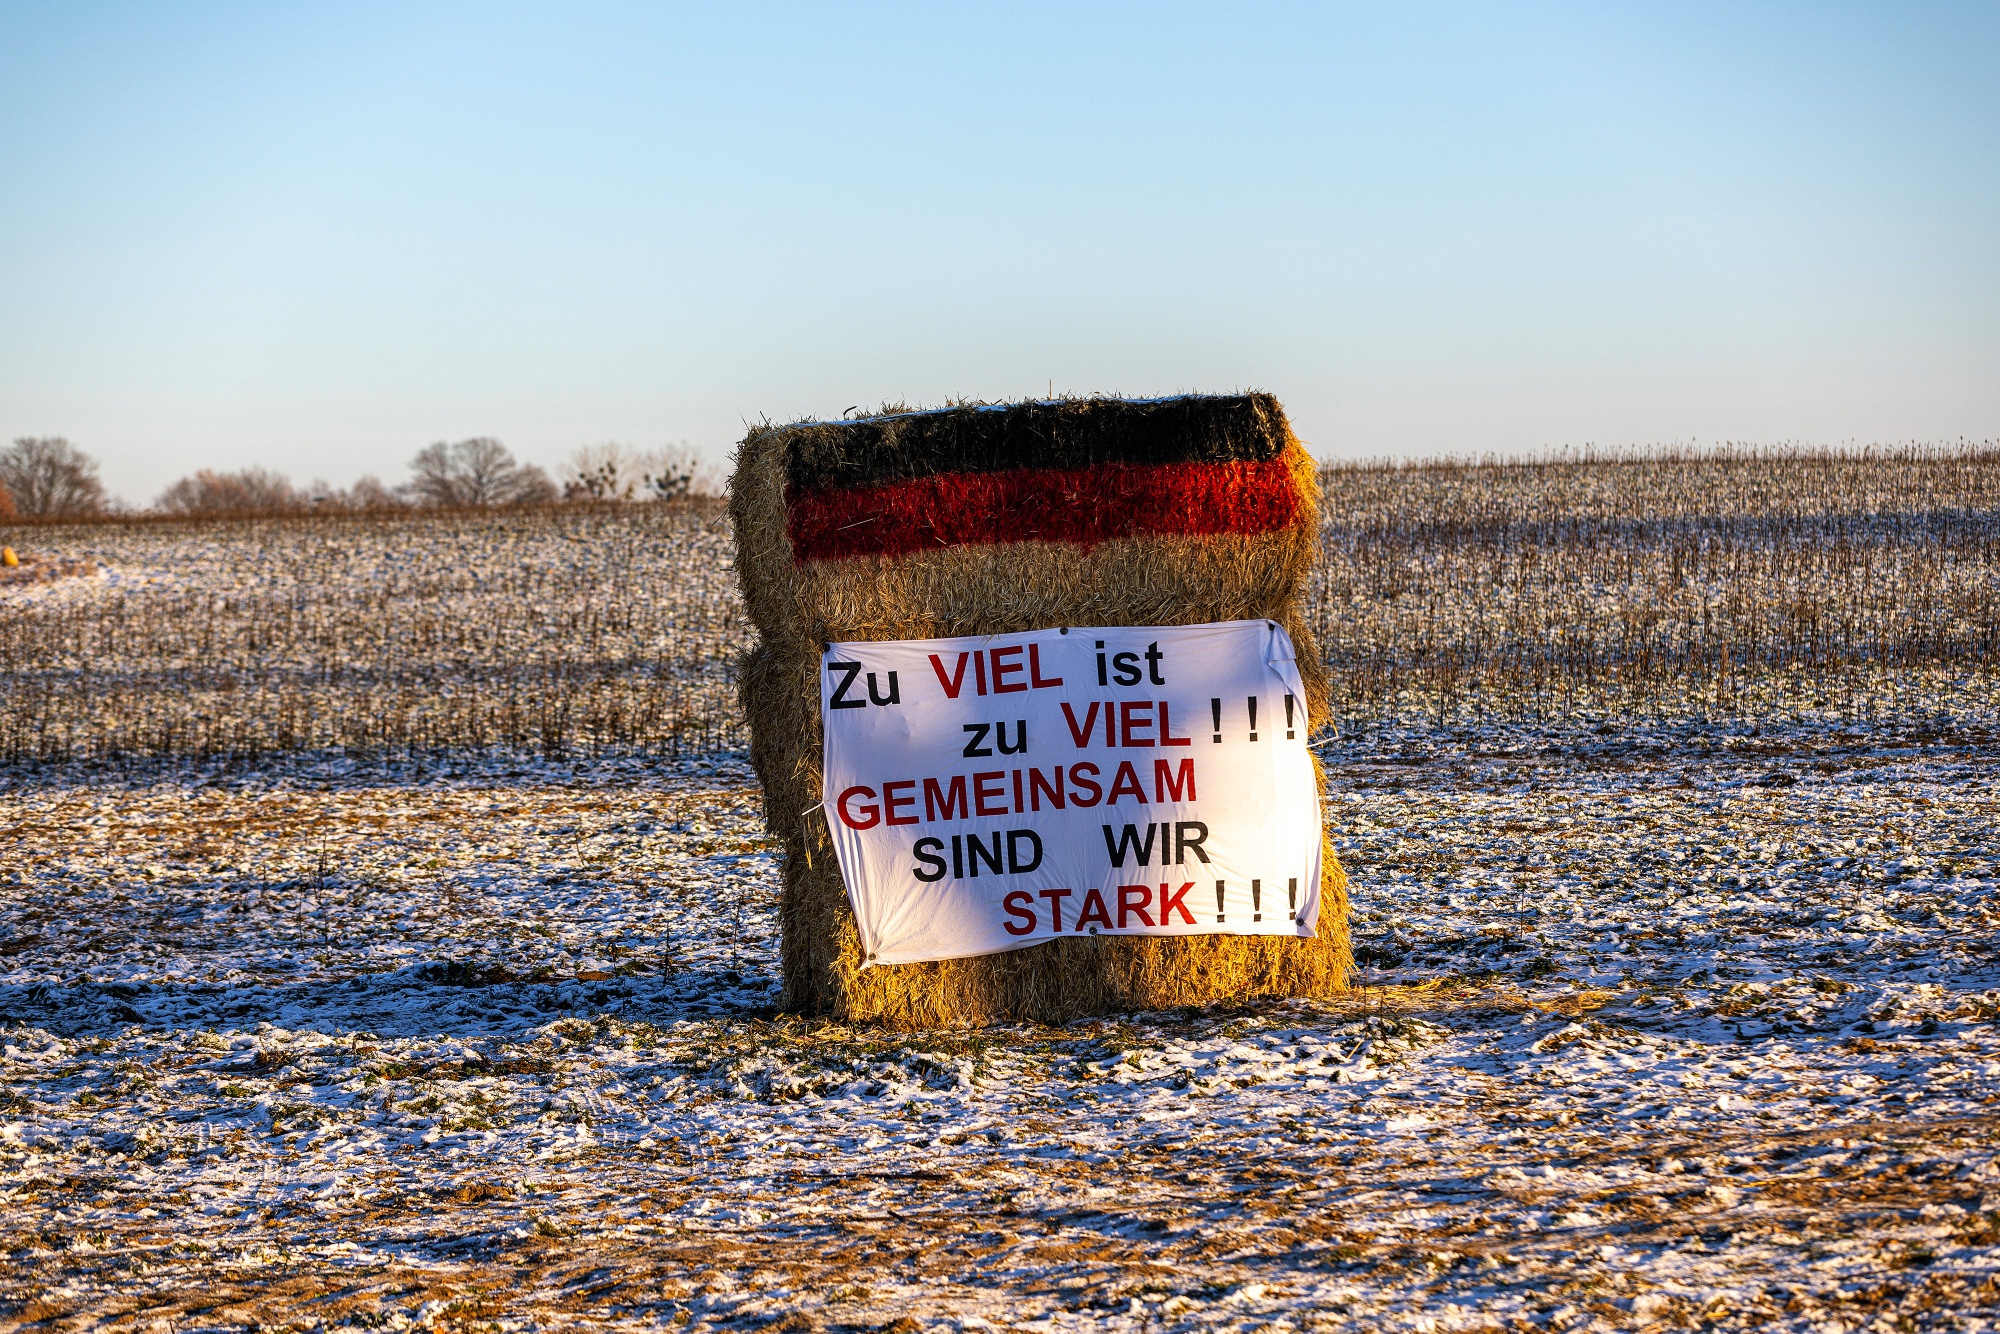 Немецкие фермеры организовали колонну тракторов в знак протеста против субсидий